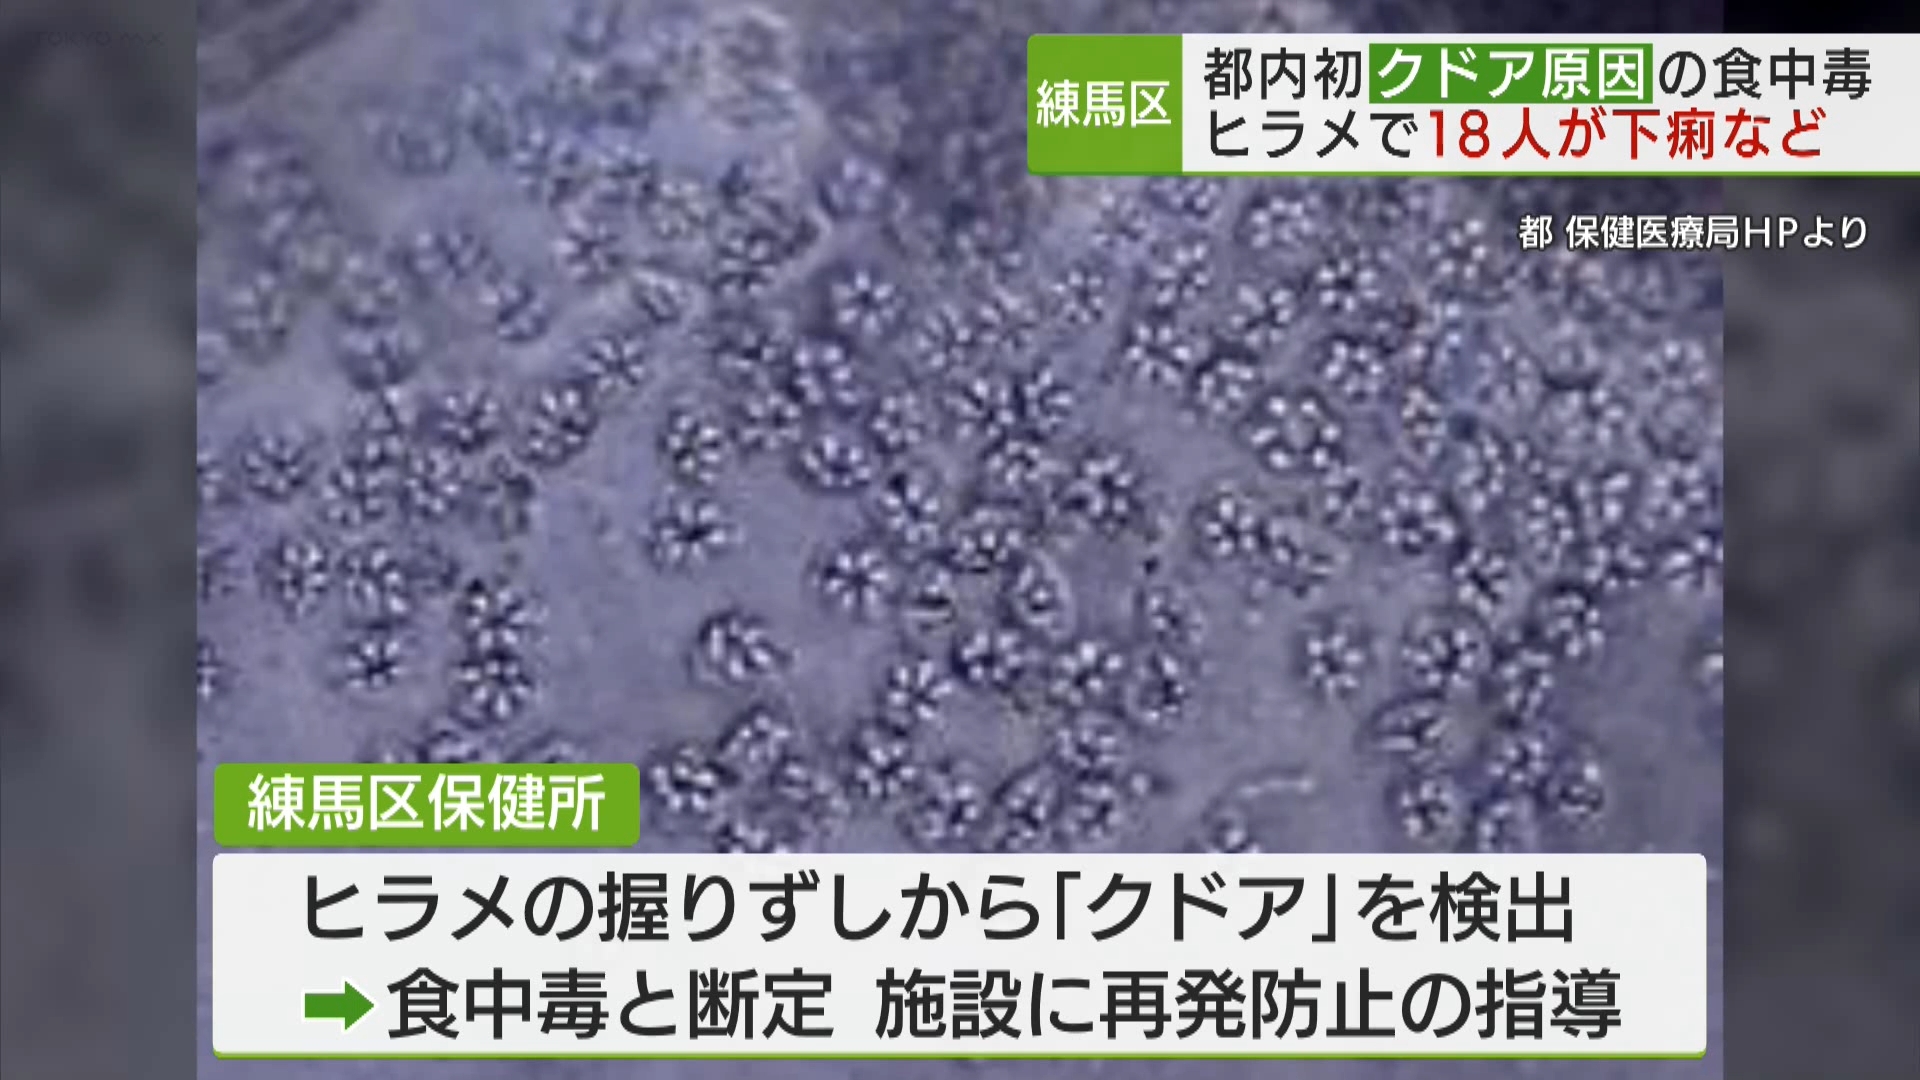 練馬区内の高齢者施設で、ヒラメに寄生する寄生虫「クドア」による食中毒が発生しました。クドアによる食中毒が東京都で発表されるのは初めてです。